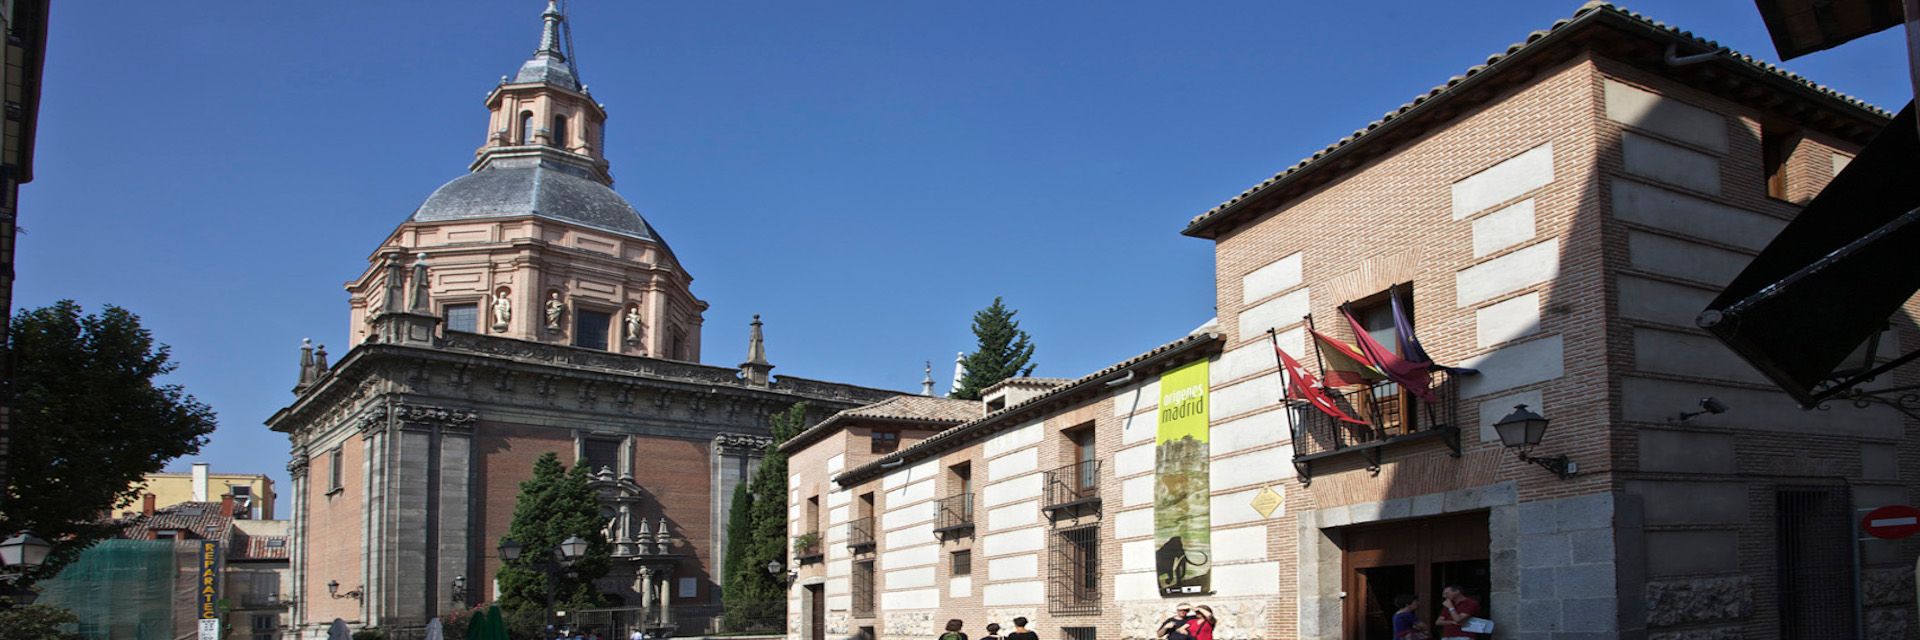 Museo de San Isidro. Los orígenes de Madrid